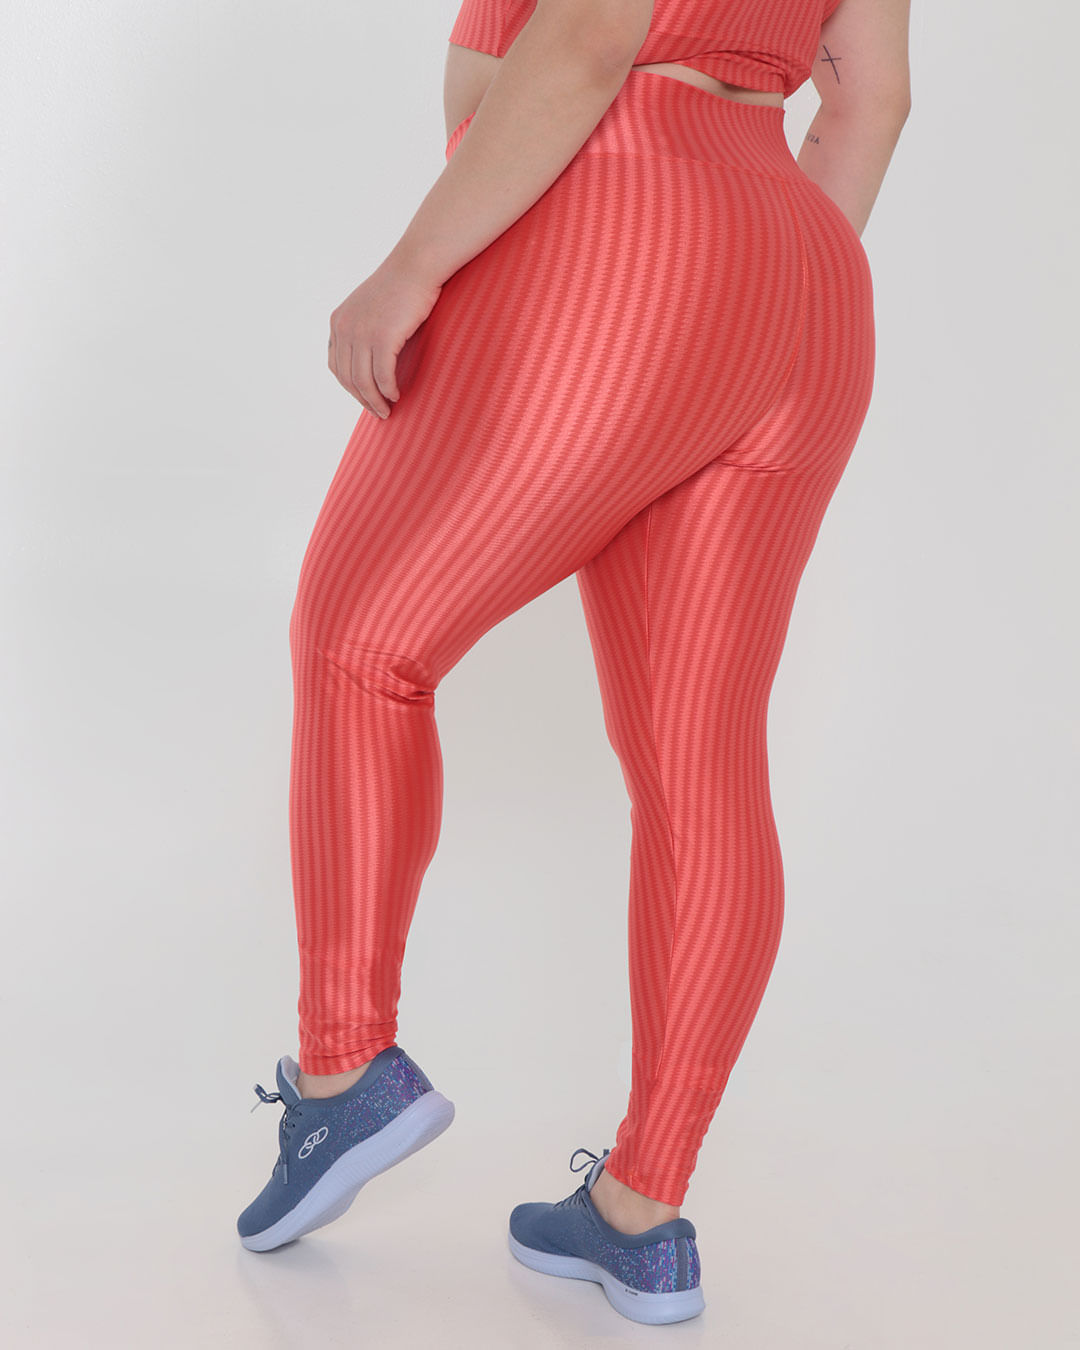 Legging 3D feminino fitness Selene